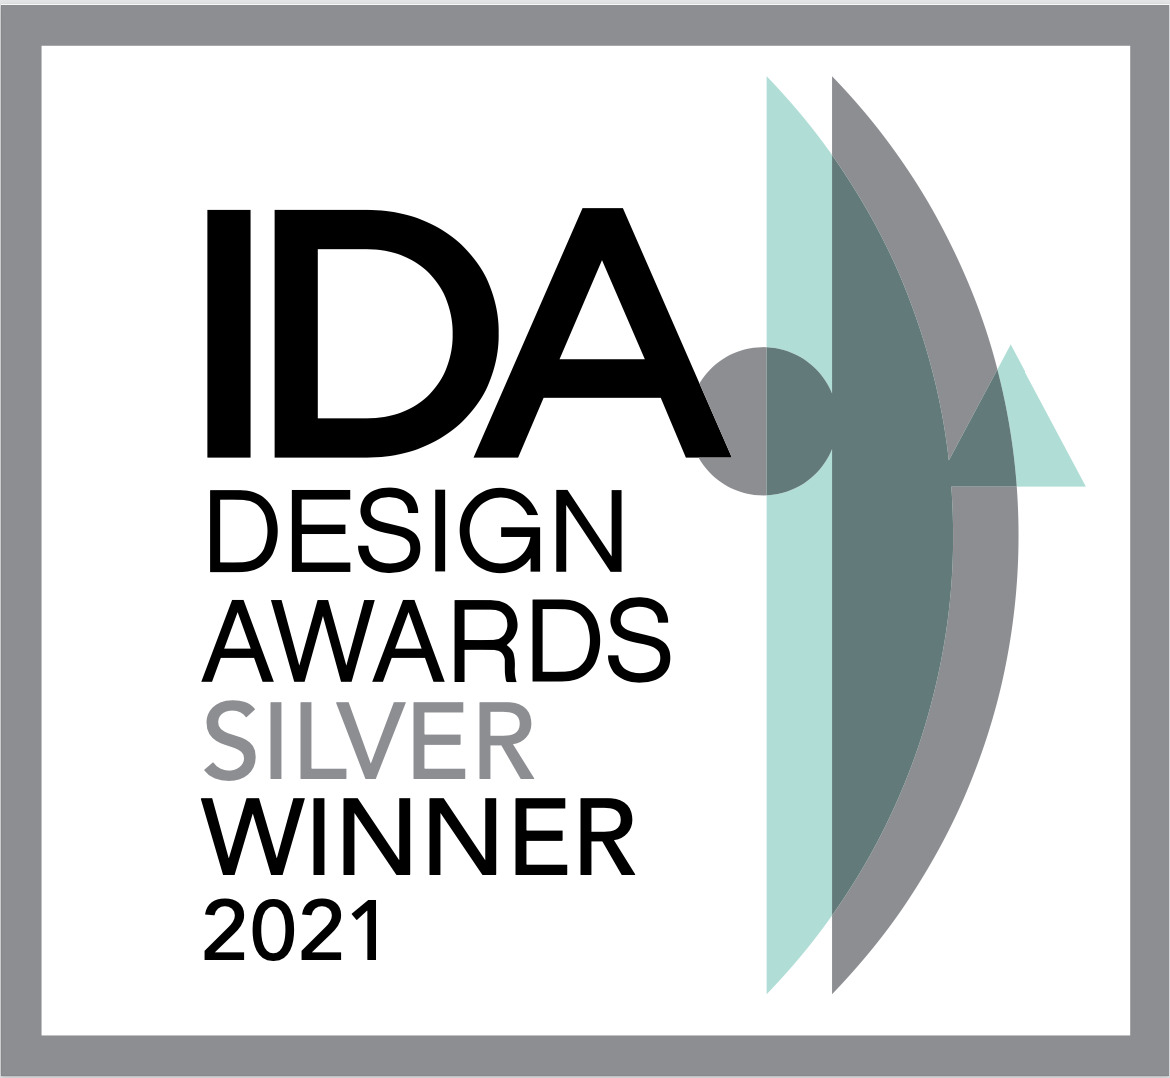 IDA Design Awards Silver Winner 2021